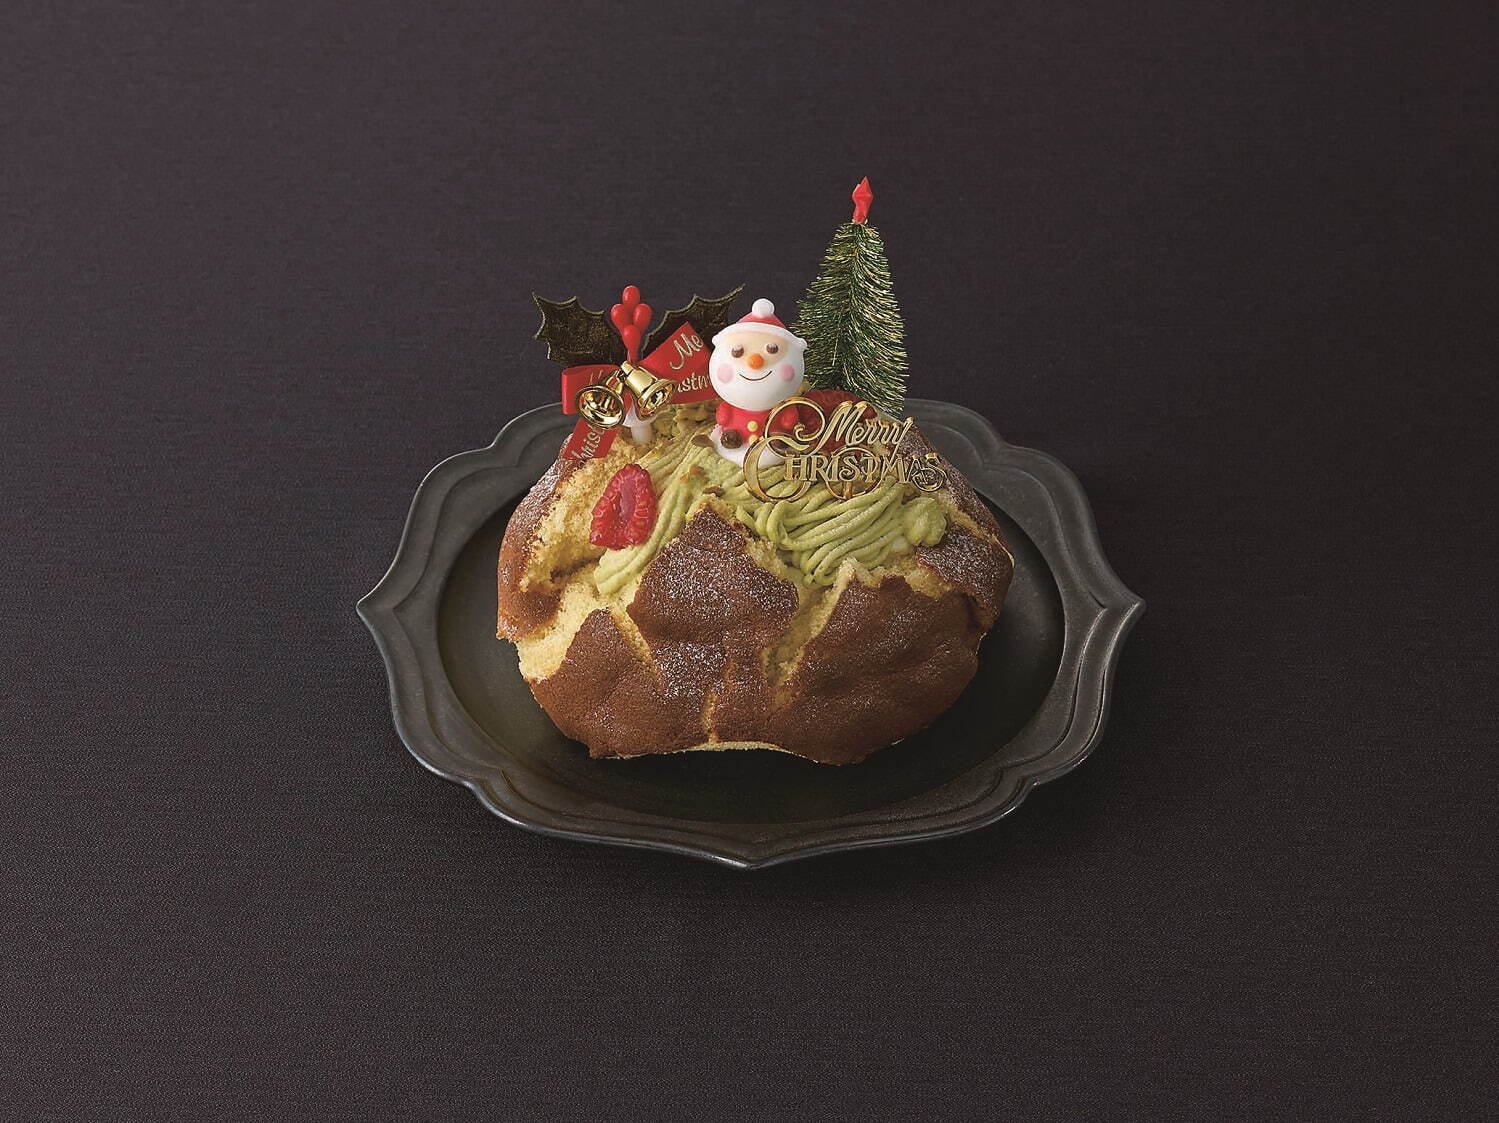 大丸神戸店のクリスマスケーキ2021年、“チョコレートベア”が主役のムースケーキなど｜写真2